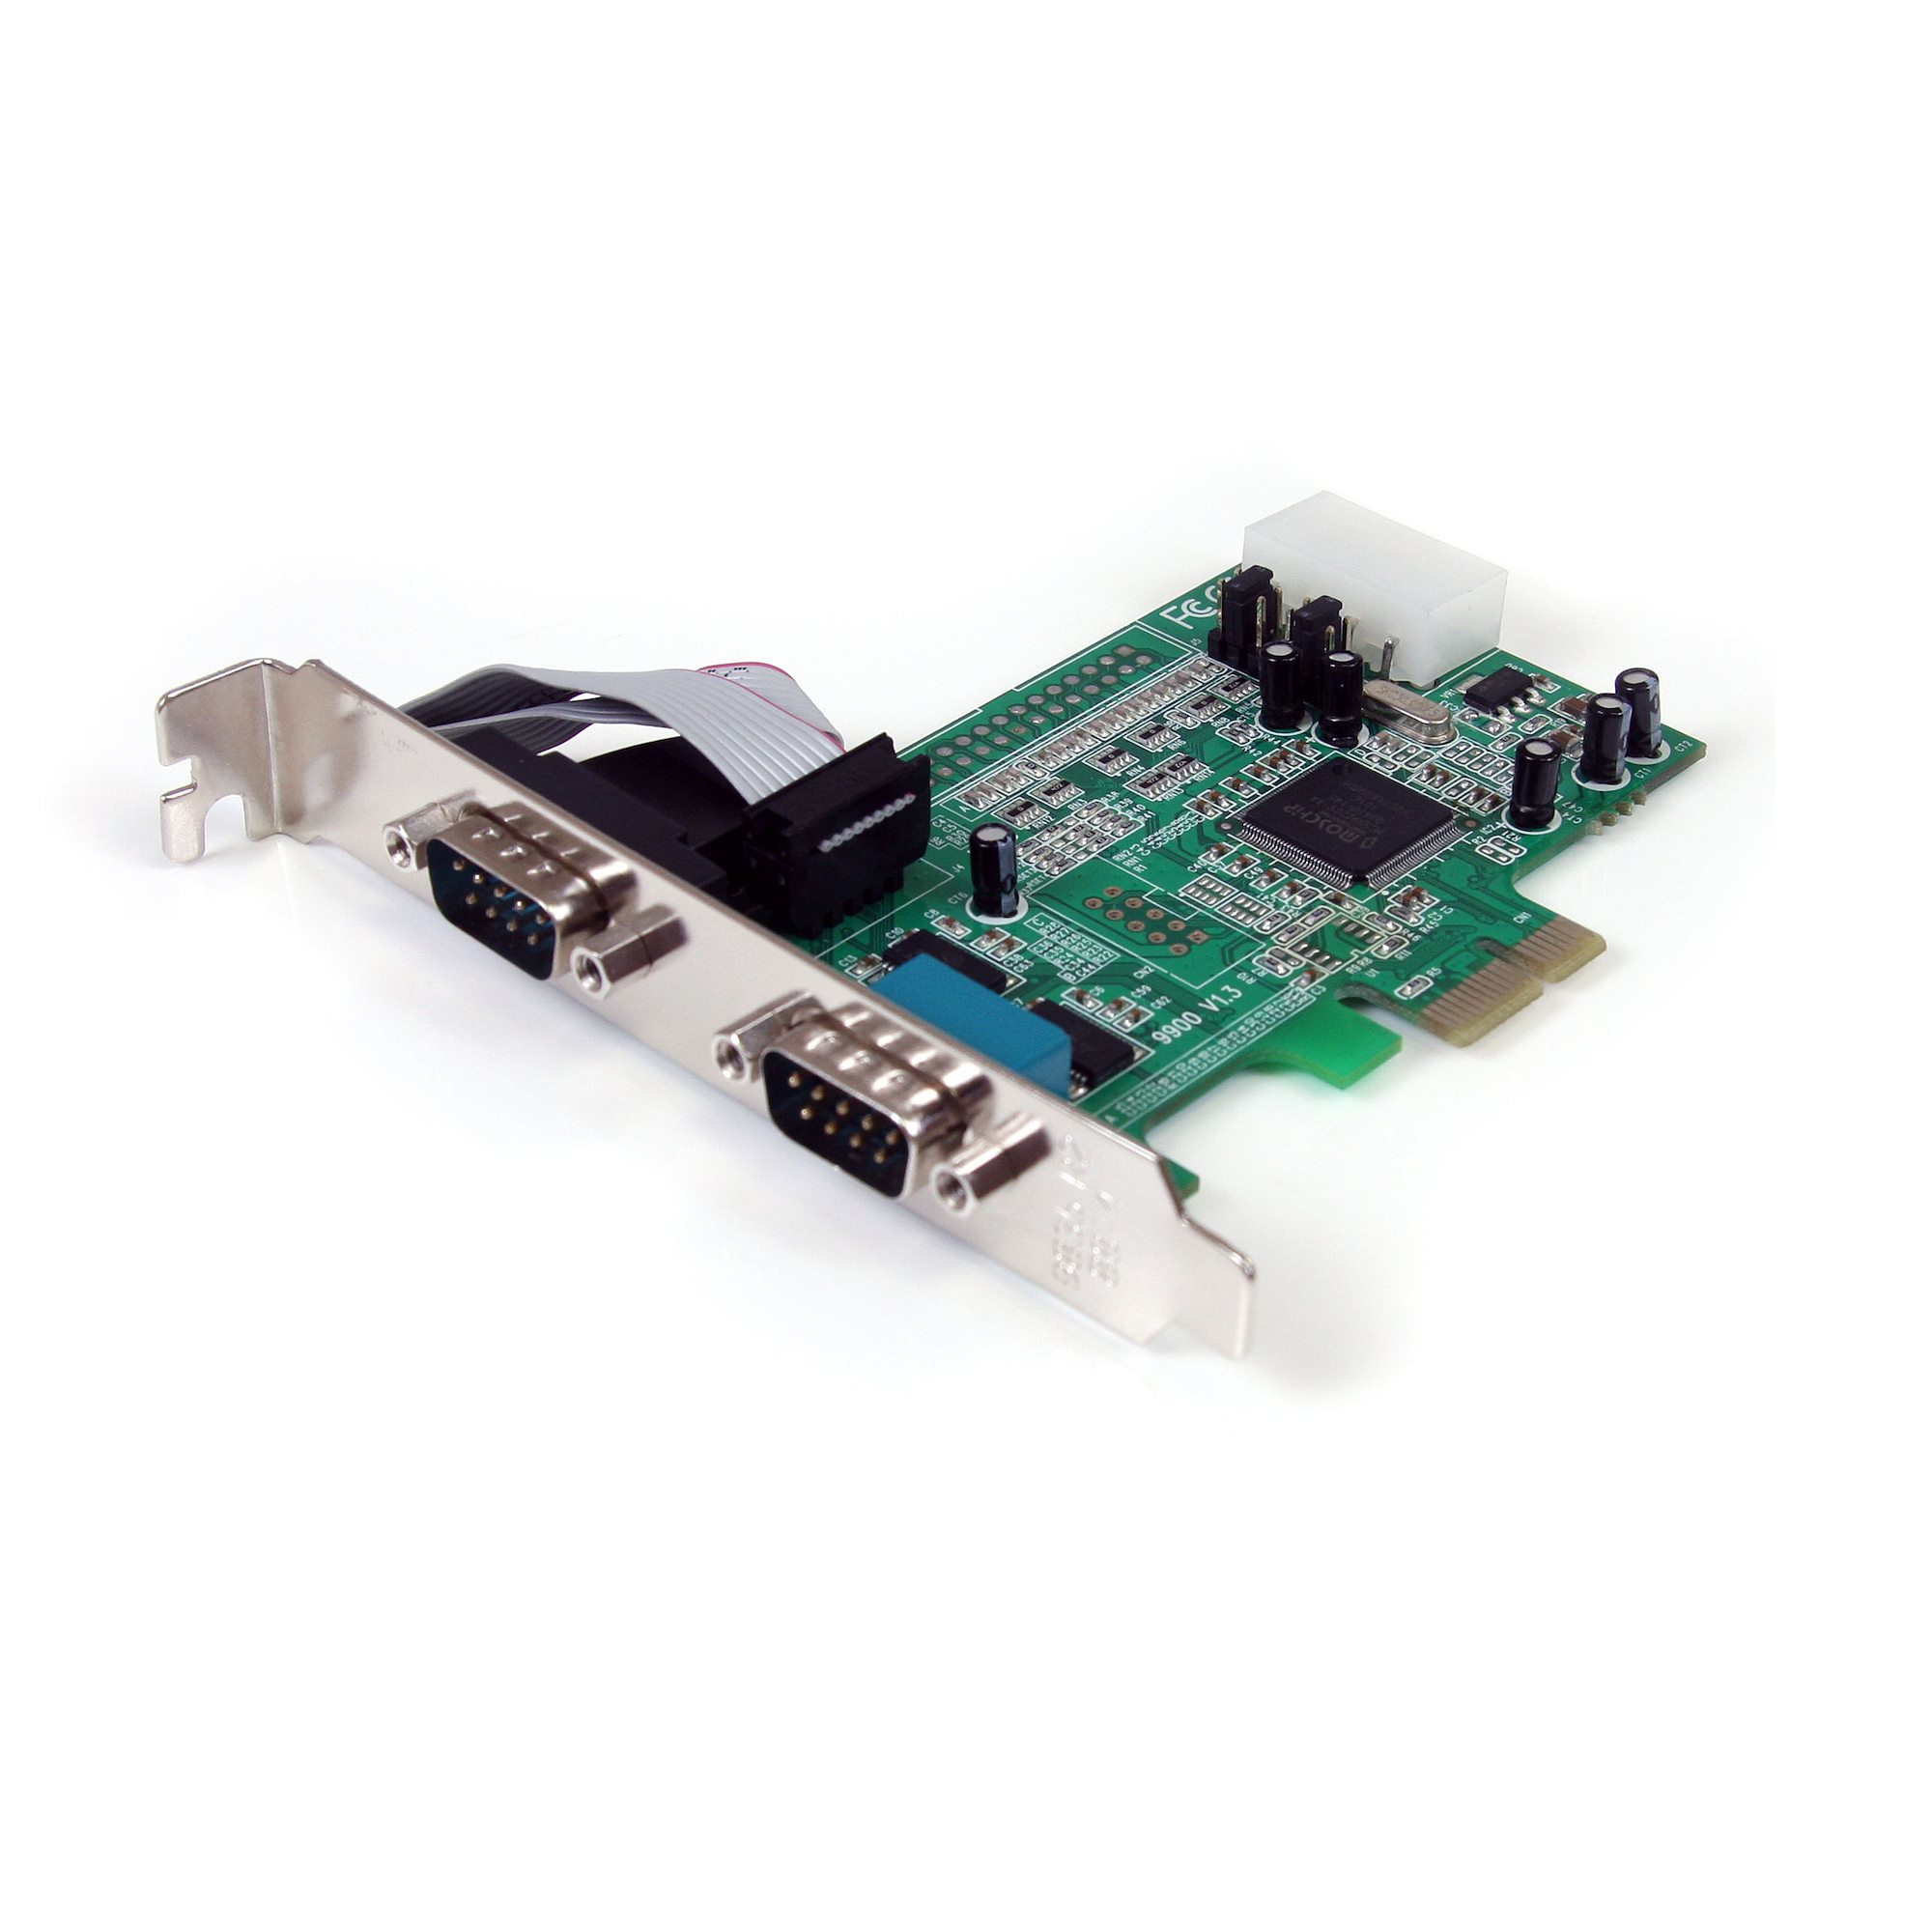 StarTech.com 2 Port Serielle PCI Express RS232 Adapter Karte - Serielle PCIe RS232 Kontroller Karte - PCIe zu Dual Serielle DB9 - 16550 UART - Erweiterungskarte - Windows & Linux (PEX2S553)